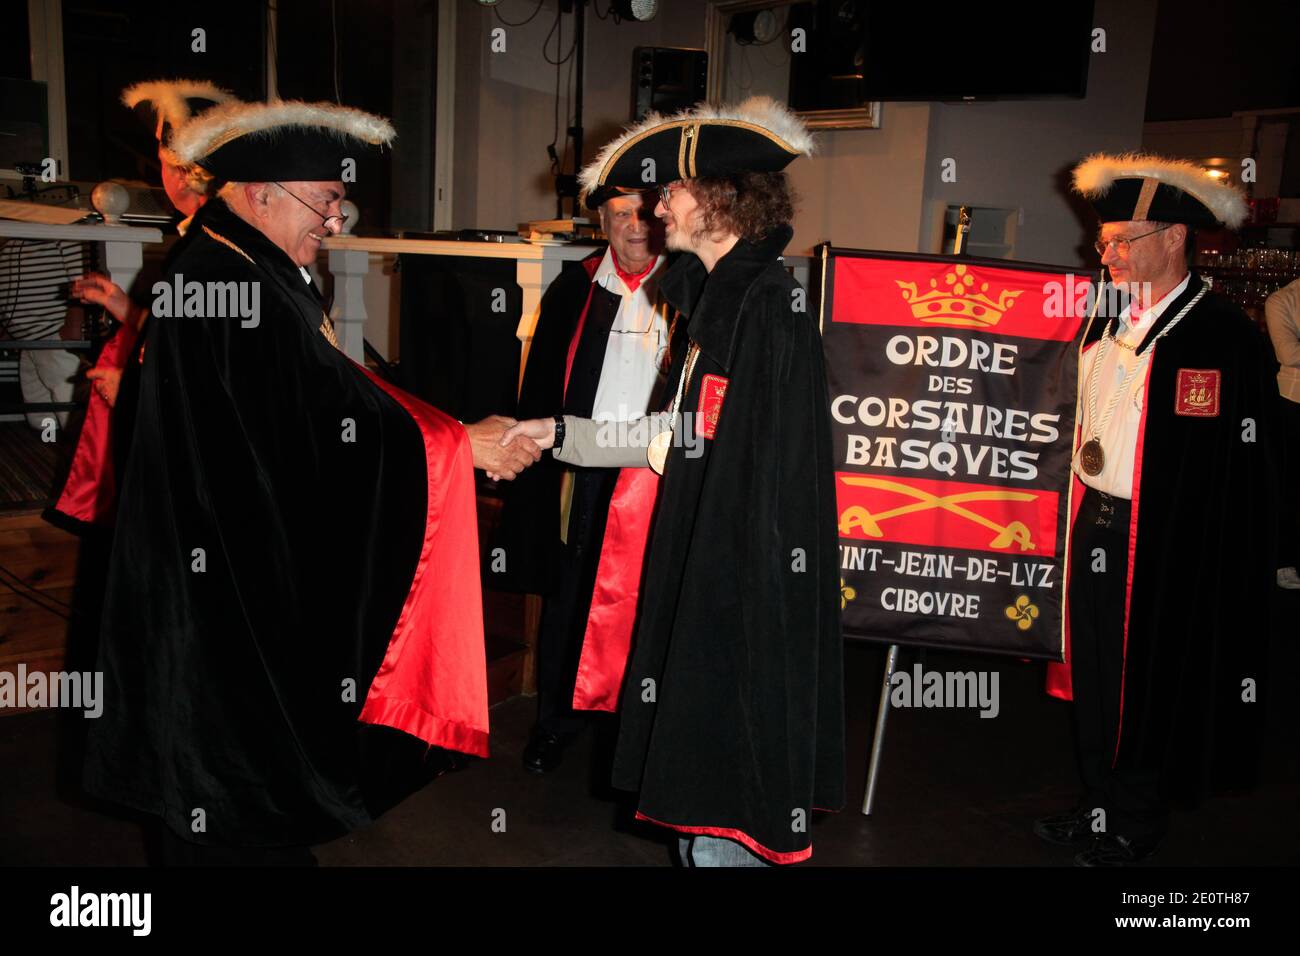 Julien Courbey est récompensé par 'l'ordre des corsaires Basques' au casino de Saint-Jean-de-Luz, France, le 13 octobre 2012. Photo de Jerome Domine/ABACAPRESS.COM Banque D'Images